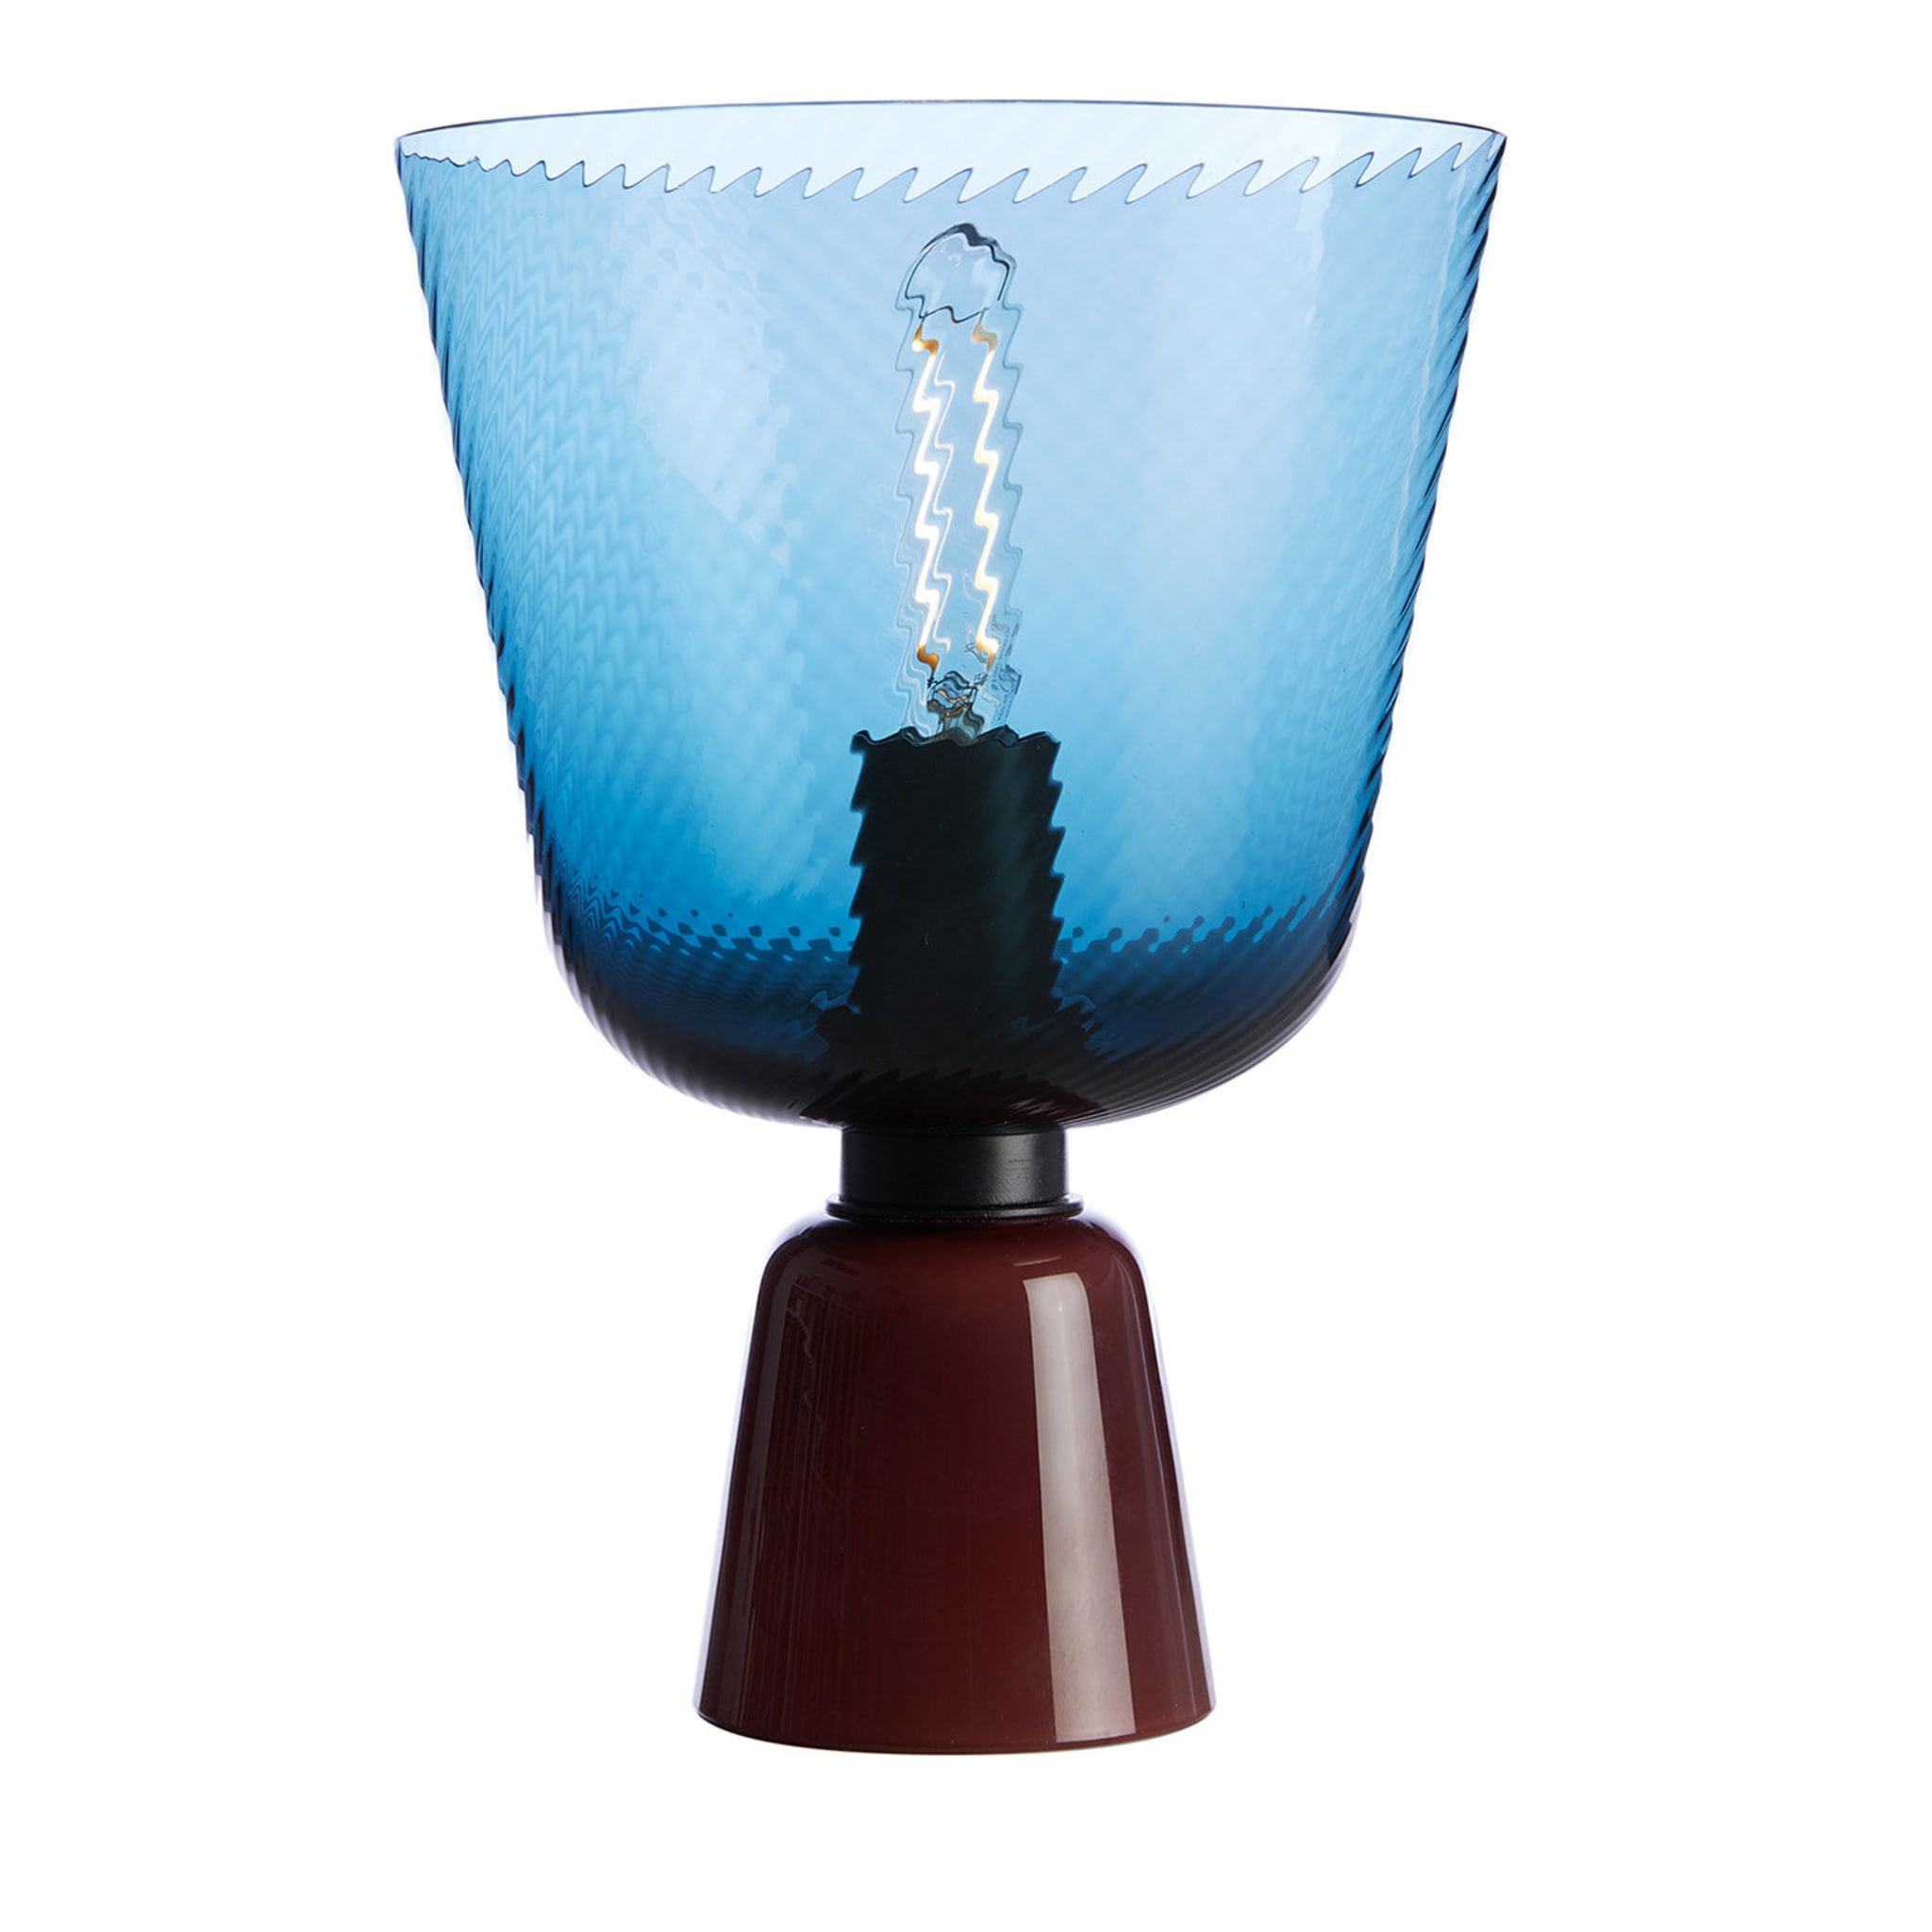 Melting Pot Reverse Small Blue Table Lamp by Matteo Zorzenoni - Main view